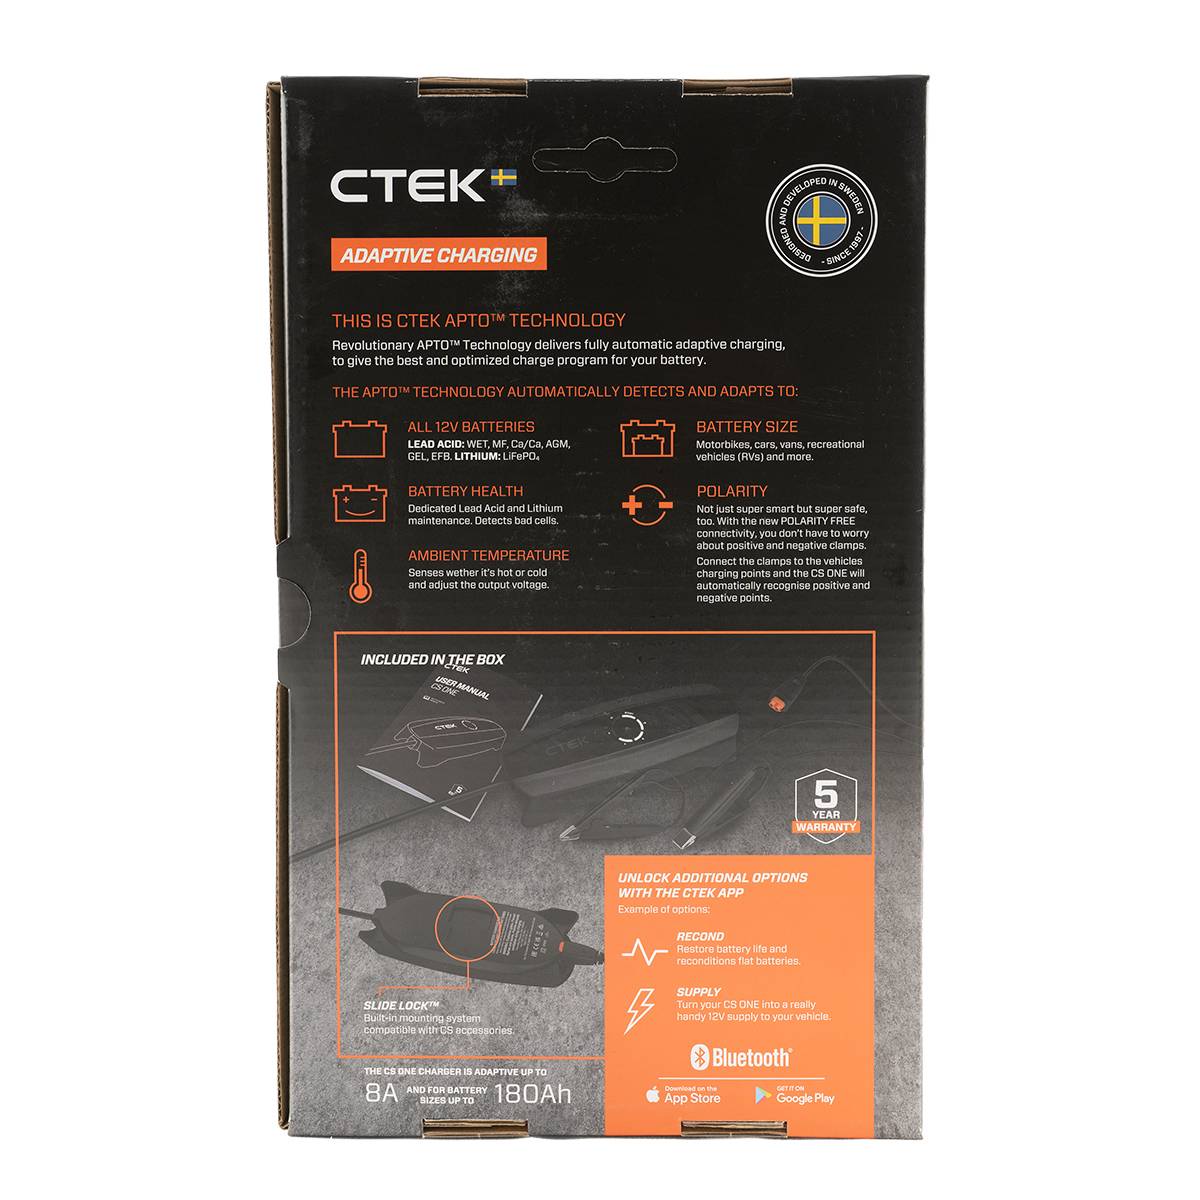 CTEK CS ONE EU Batterielade- und Wartungsgerät